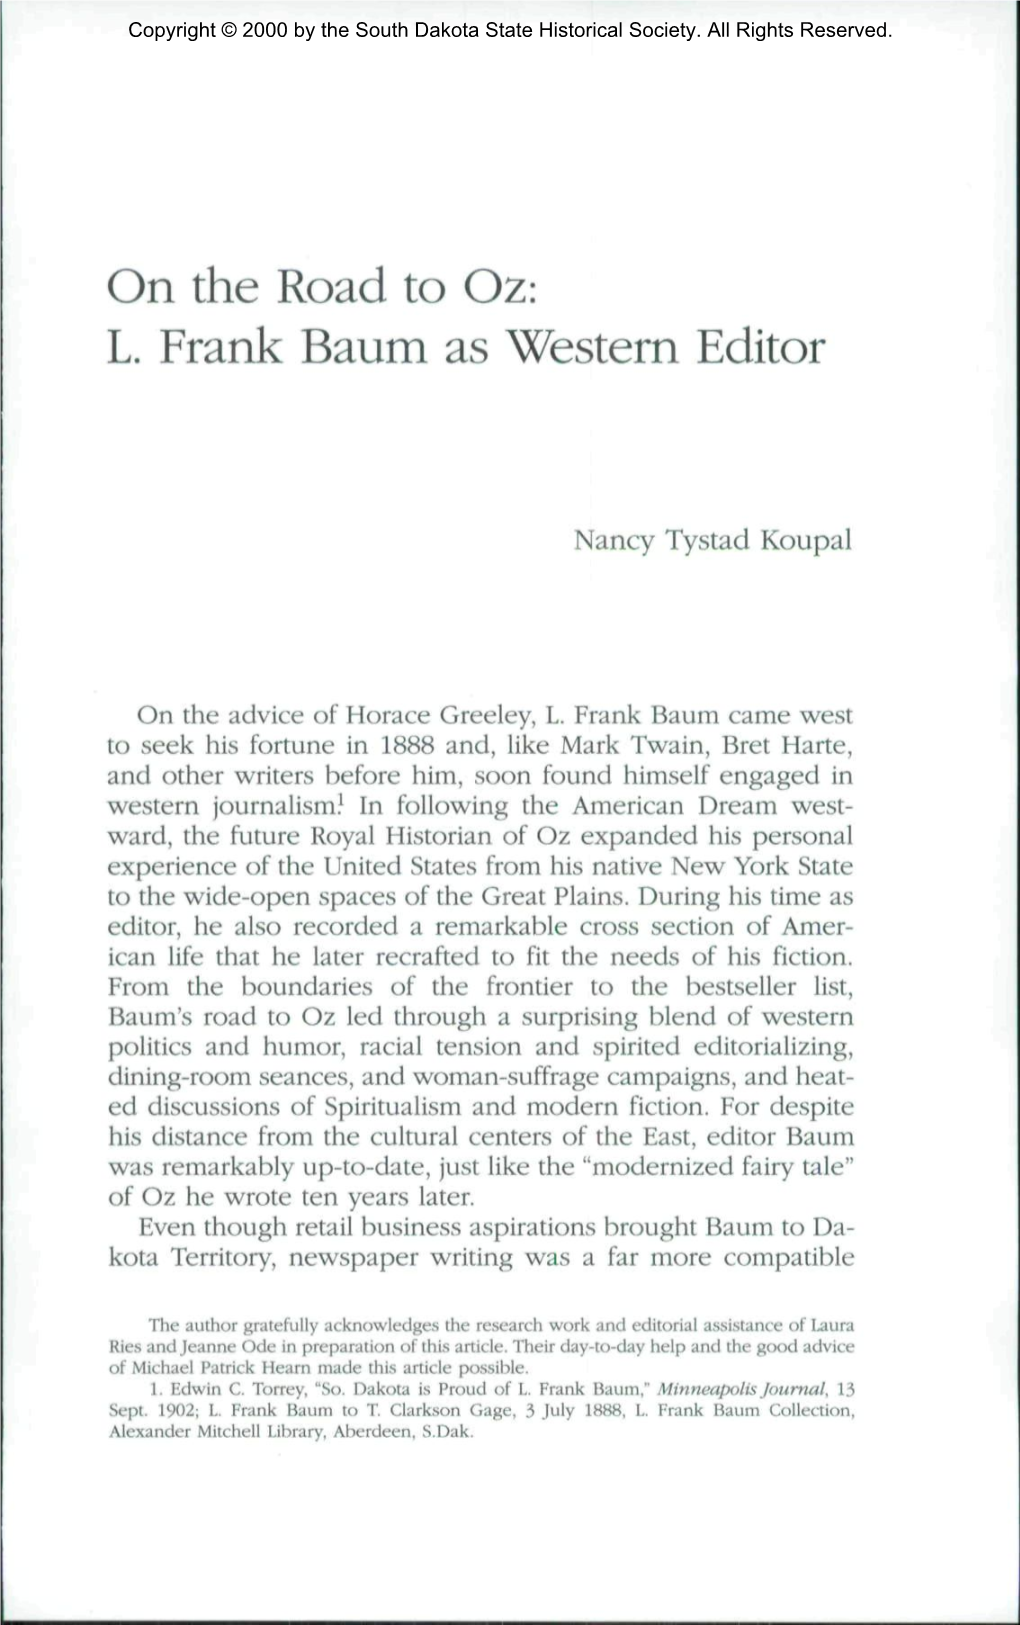 L. Frank Baum As Western Editor